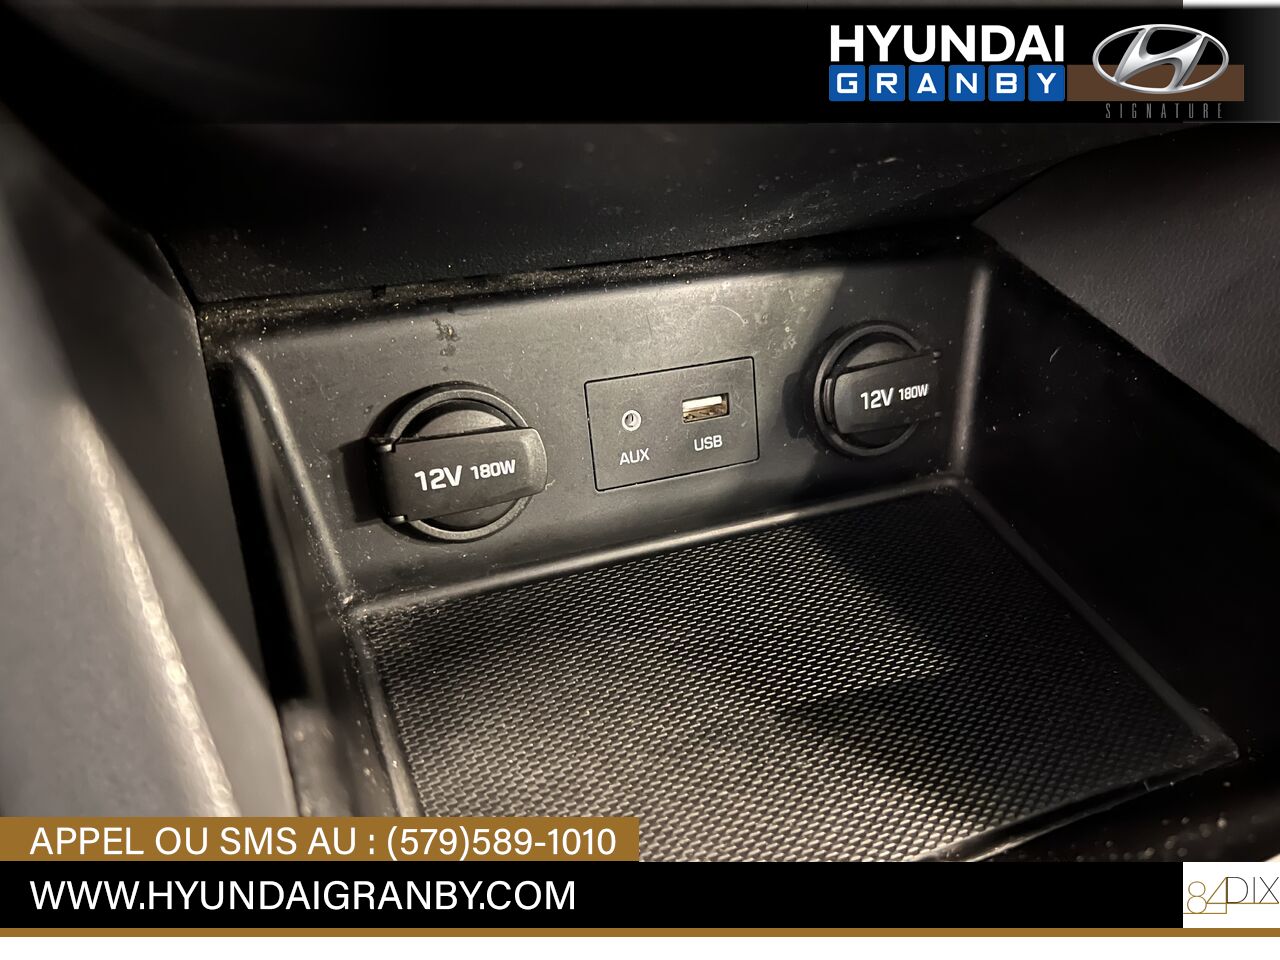 Hyundai Ioniq hybride 2017 Granby - photo #18